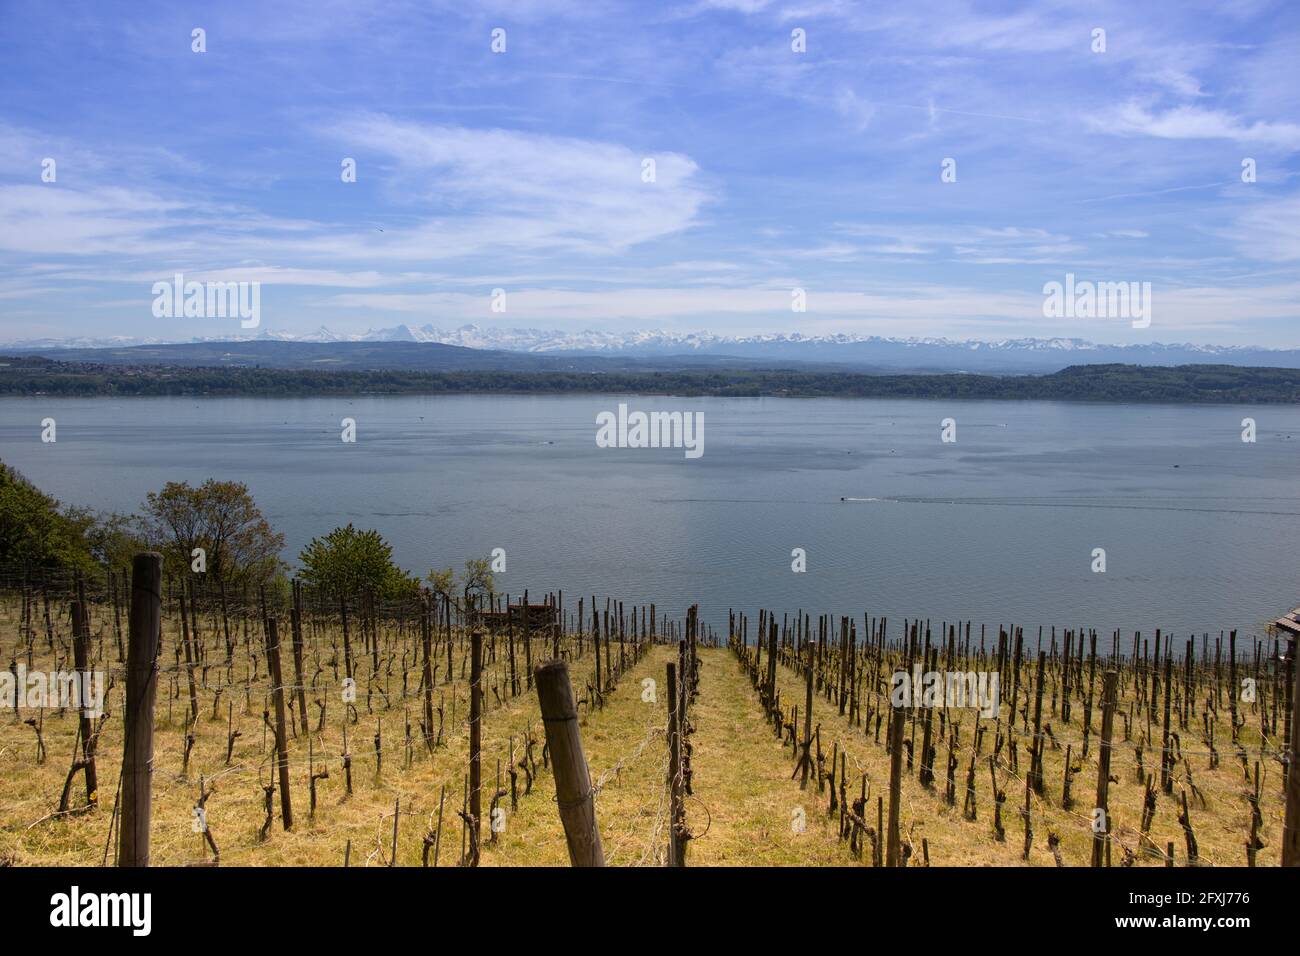 Vignoble de Ligerz au lac de Biel. Panorama alpin en arrière-plan. Banque D'Images